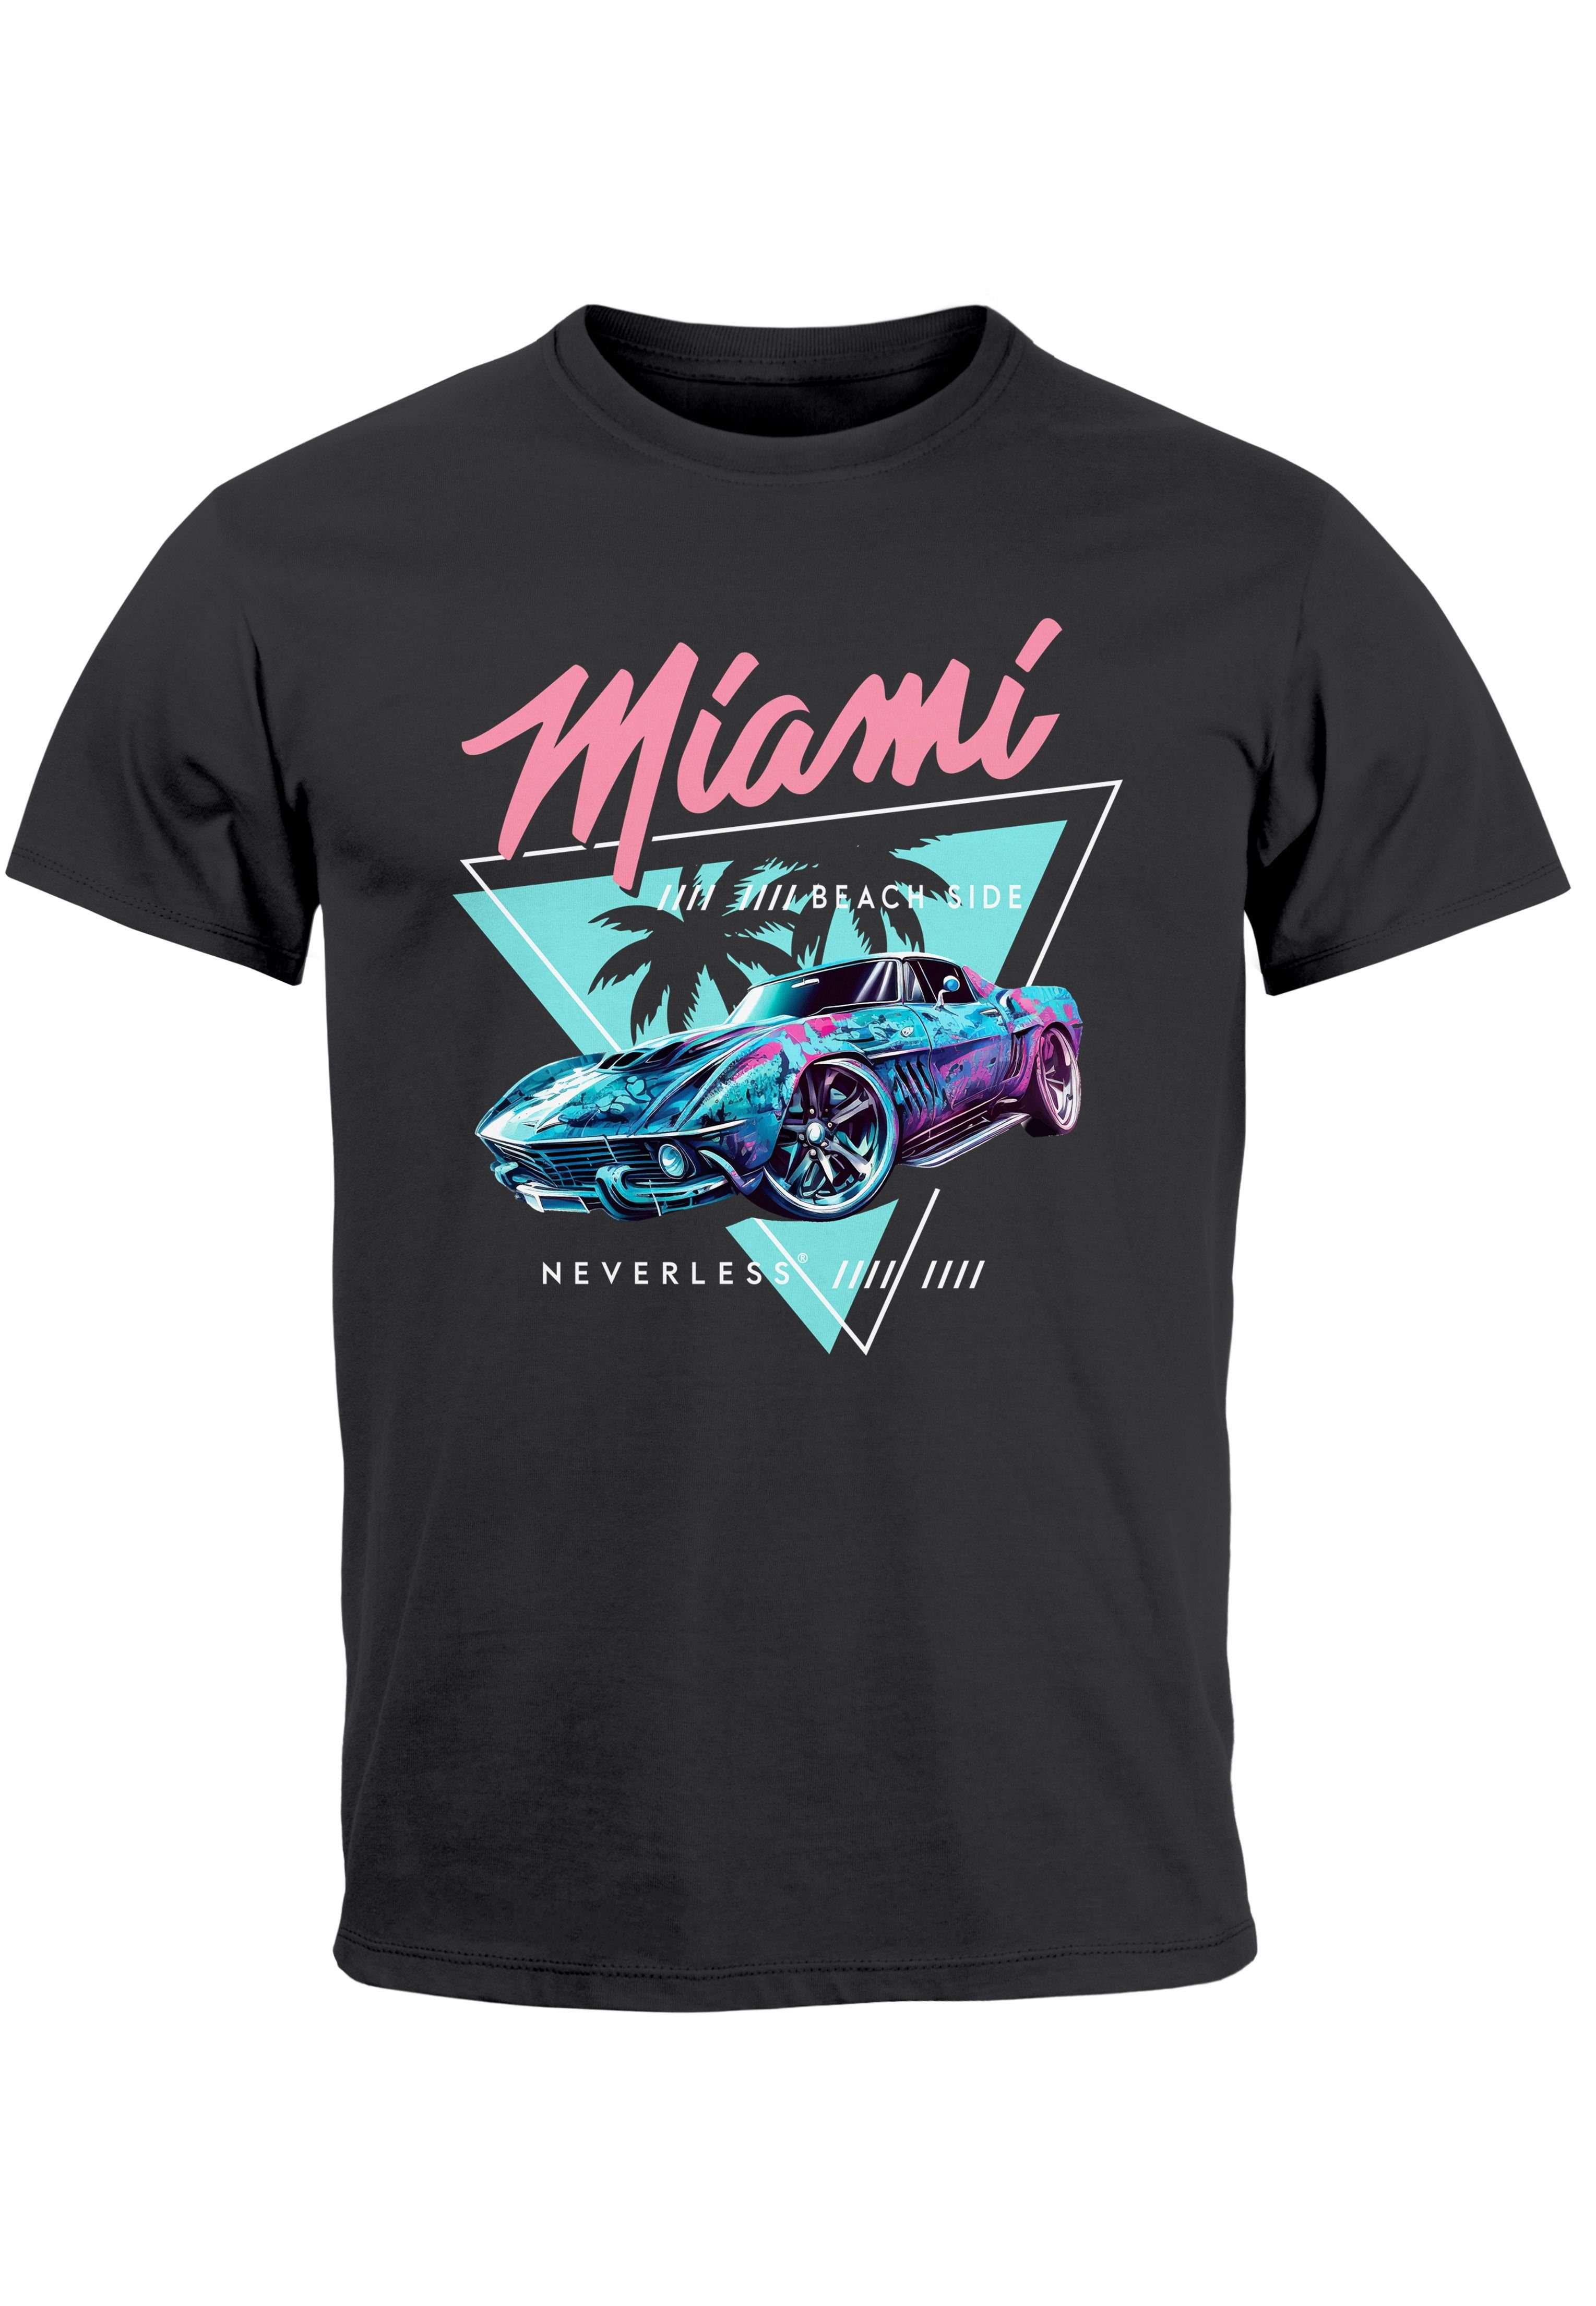 Neverless Print-Shirt Miami T-Shirt Surfing Automobil Motiv Beach Print USA dunkelgrau Herren mit Bedruckt Retro